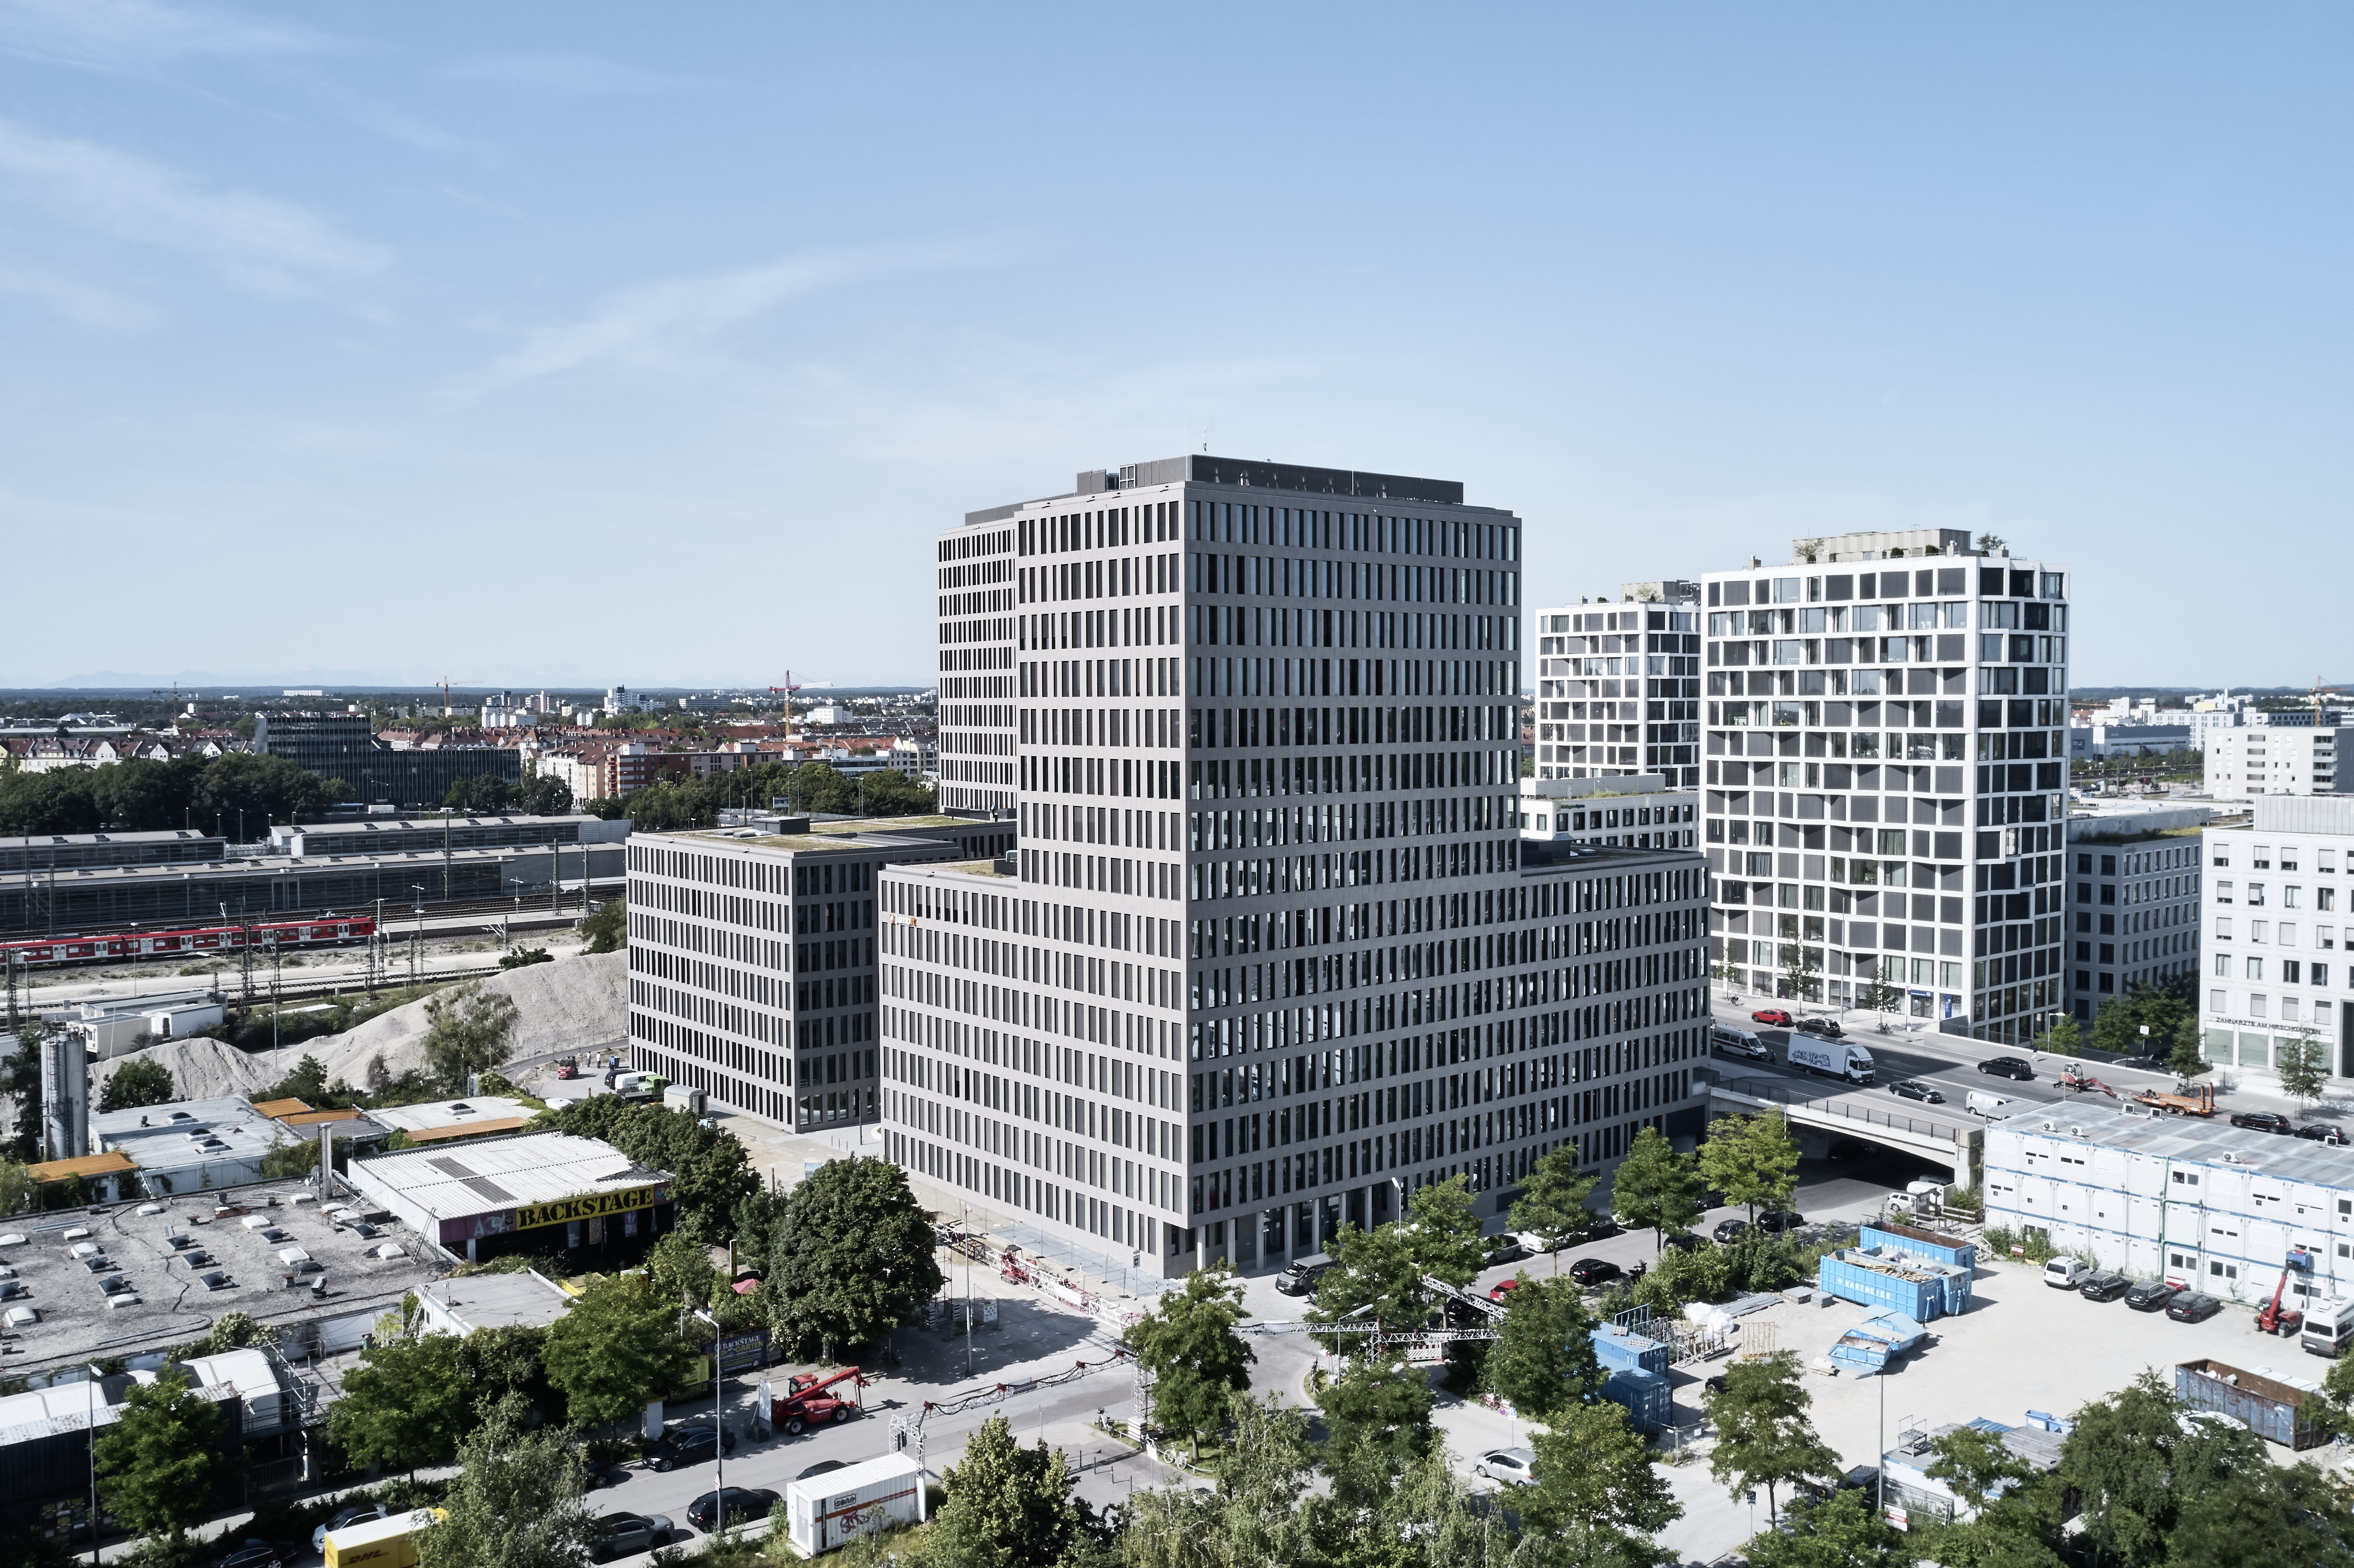 Kap West w Monachium wybiera rozwiązanie WICONA w postaci fasady modułowej